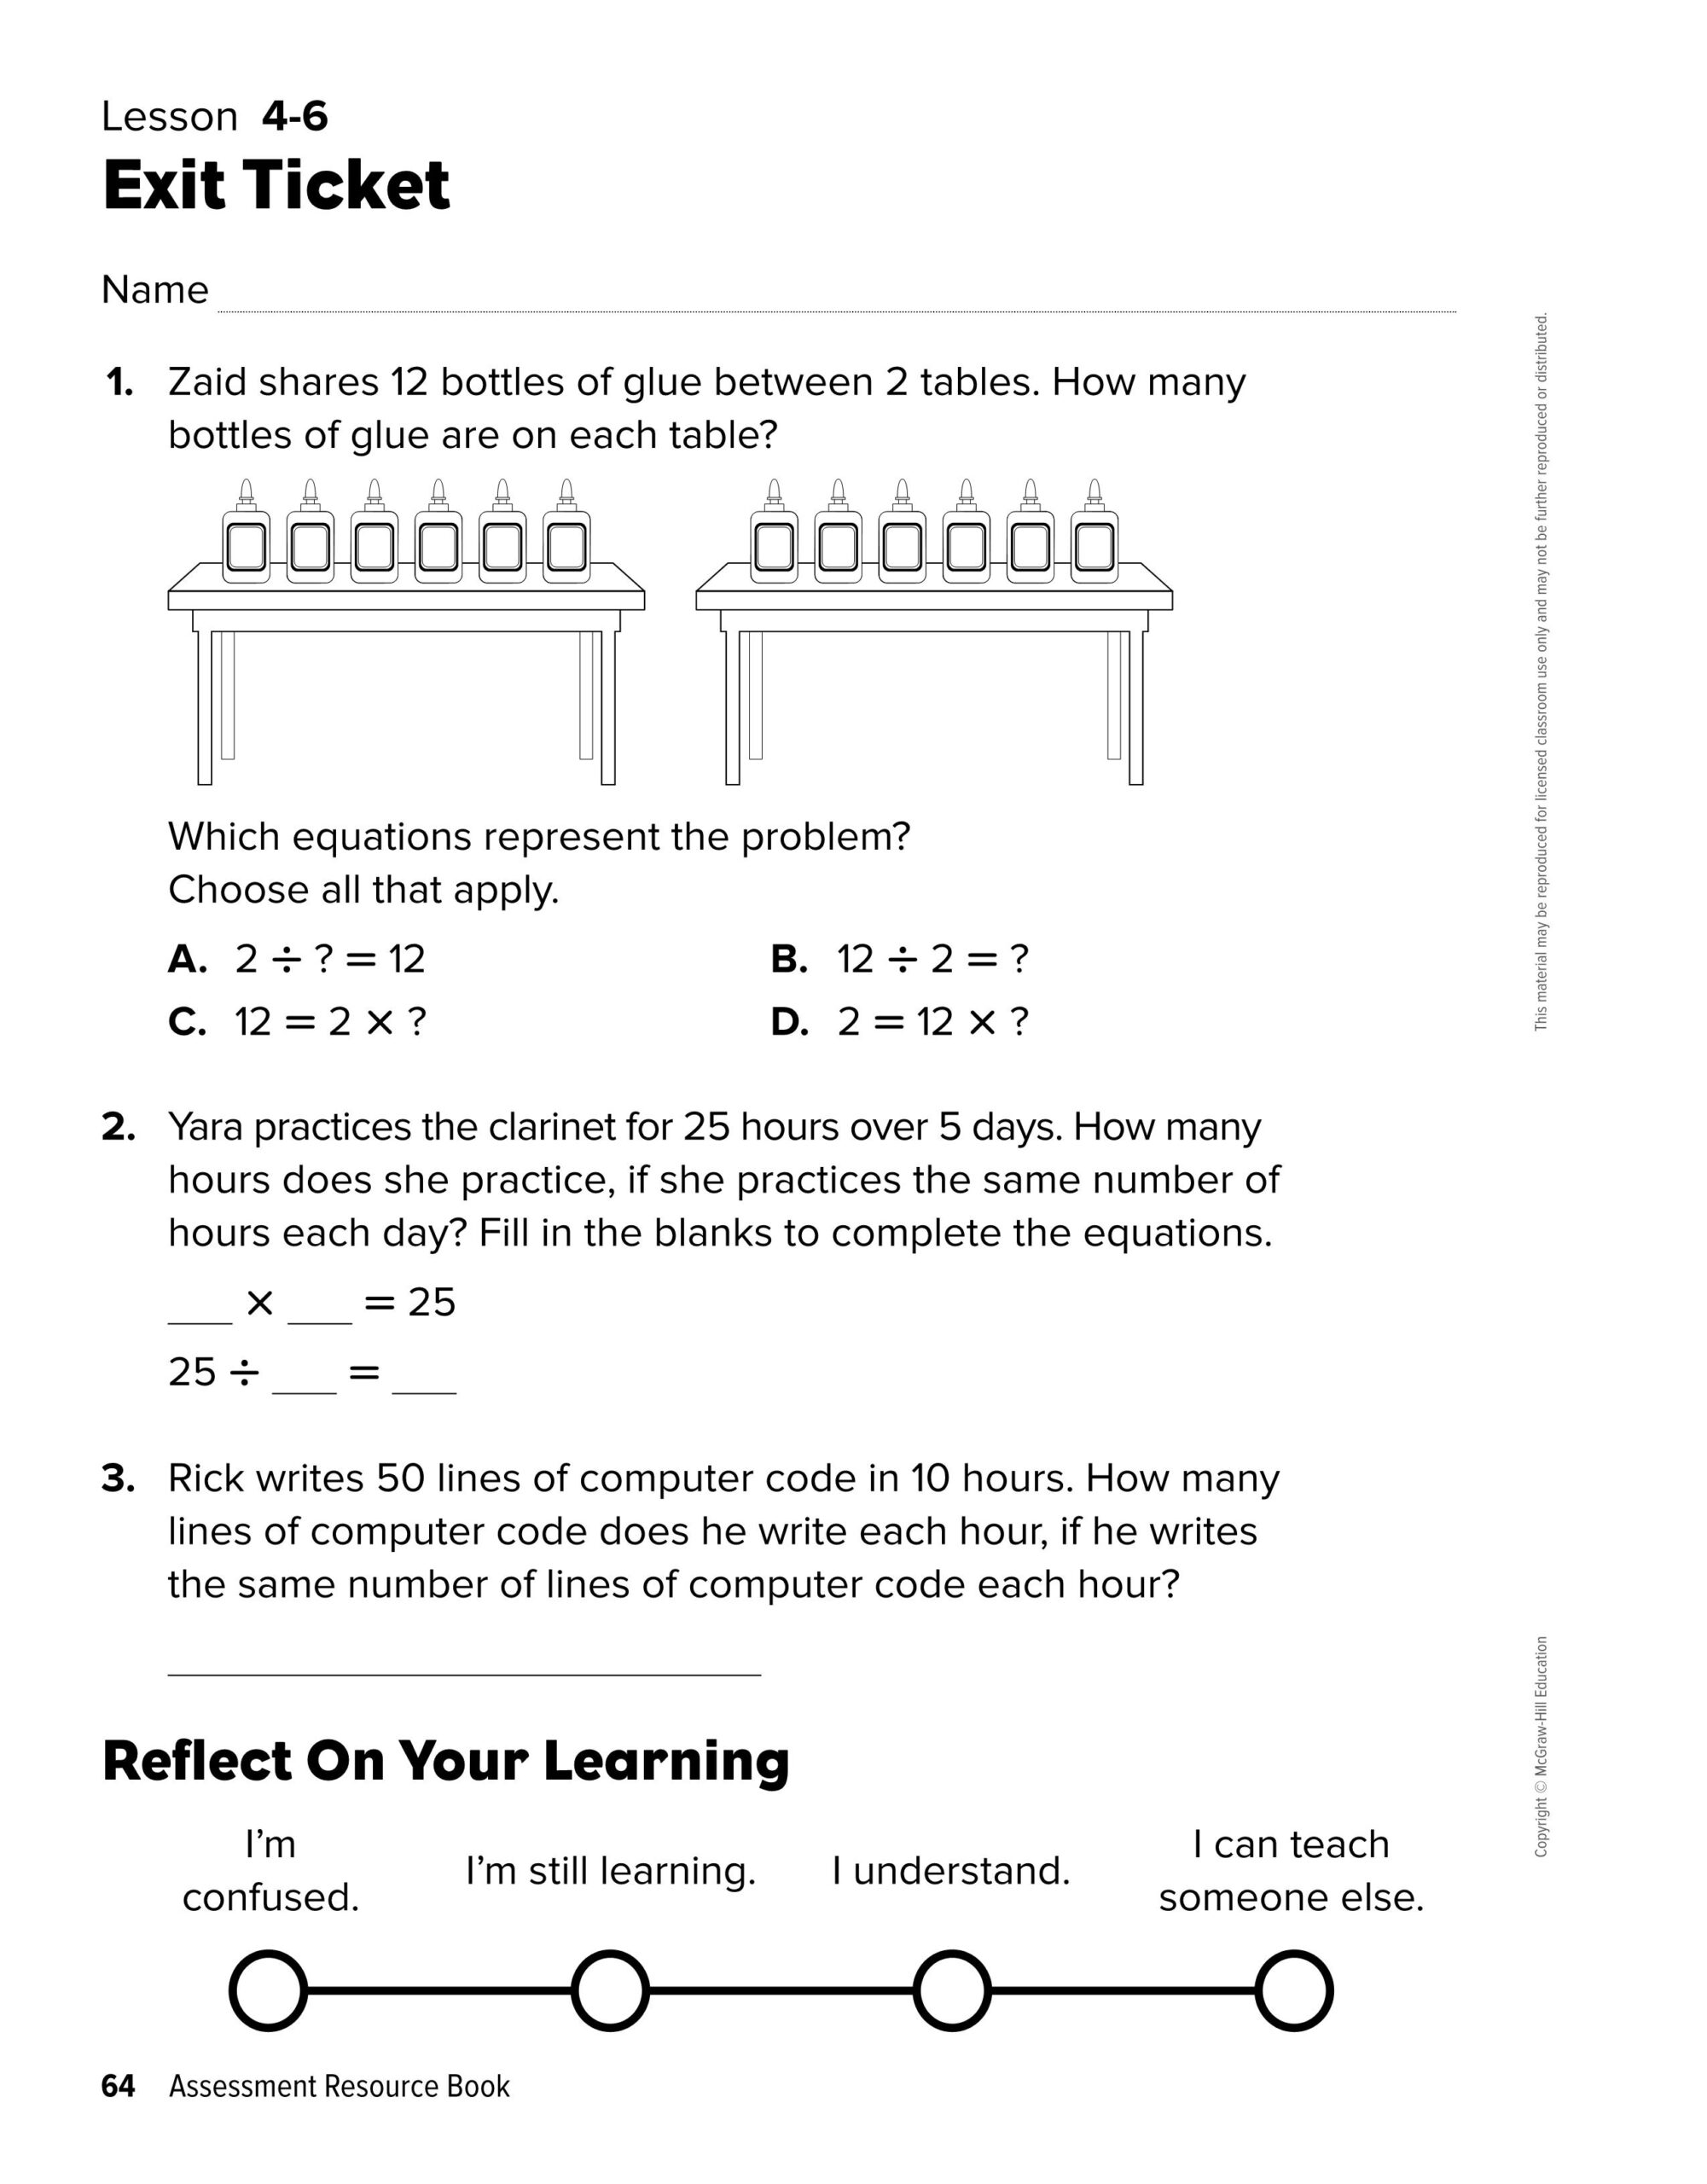 ورقة عمل Lesson 4-6 الرياضيات المتكاملة الصف الثالث